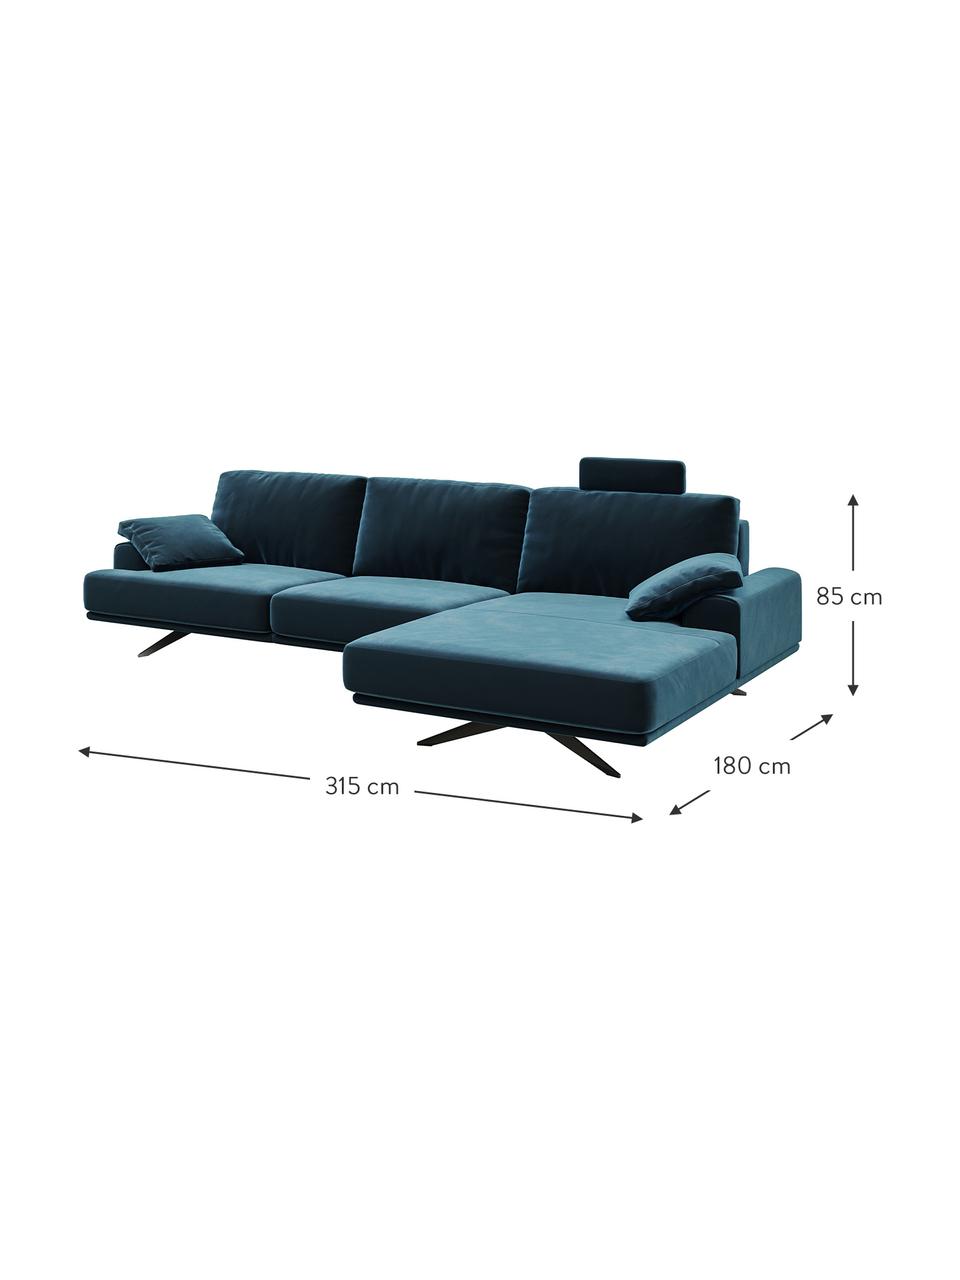 Sofa narożna z aksamitu Prado, Tapicerka: 100% aksamit poliestrowy,, Nogi: metal lakierowany, Ciemny niebieski, S 315 x G 180 cm